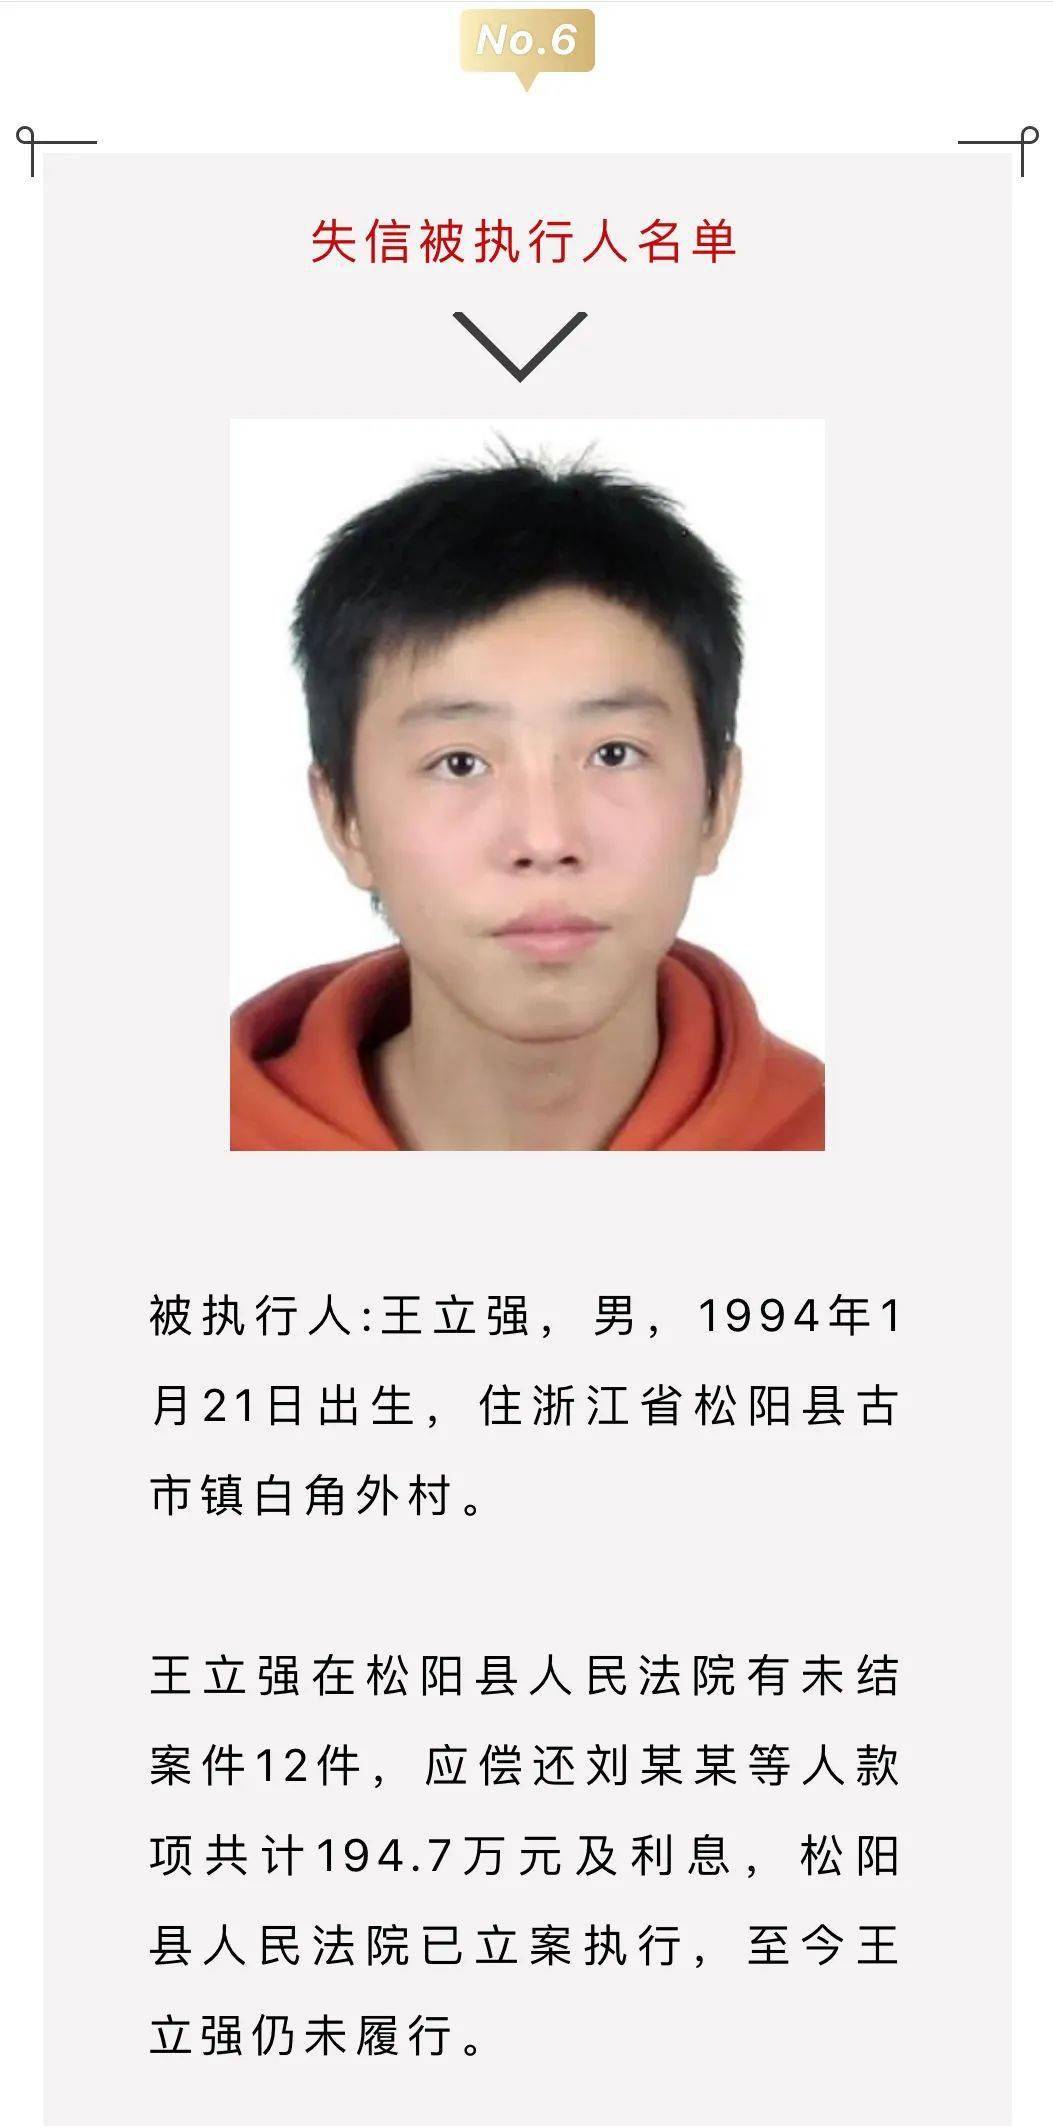 陈琳彬在松阳县人民法院有未结案件4件,应偿还陶某某等人款项共计23